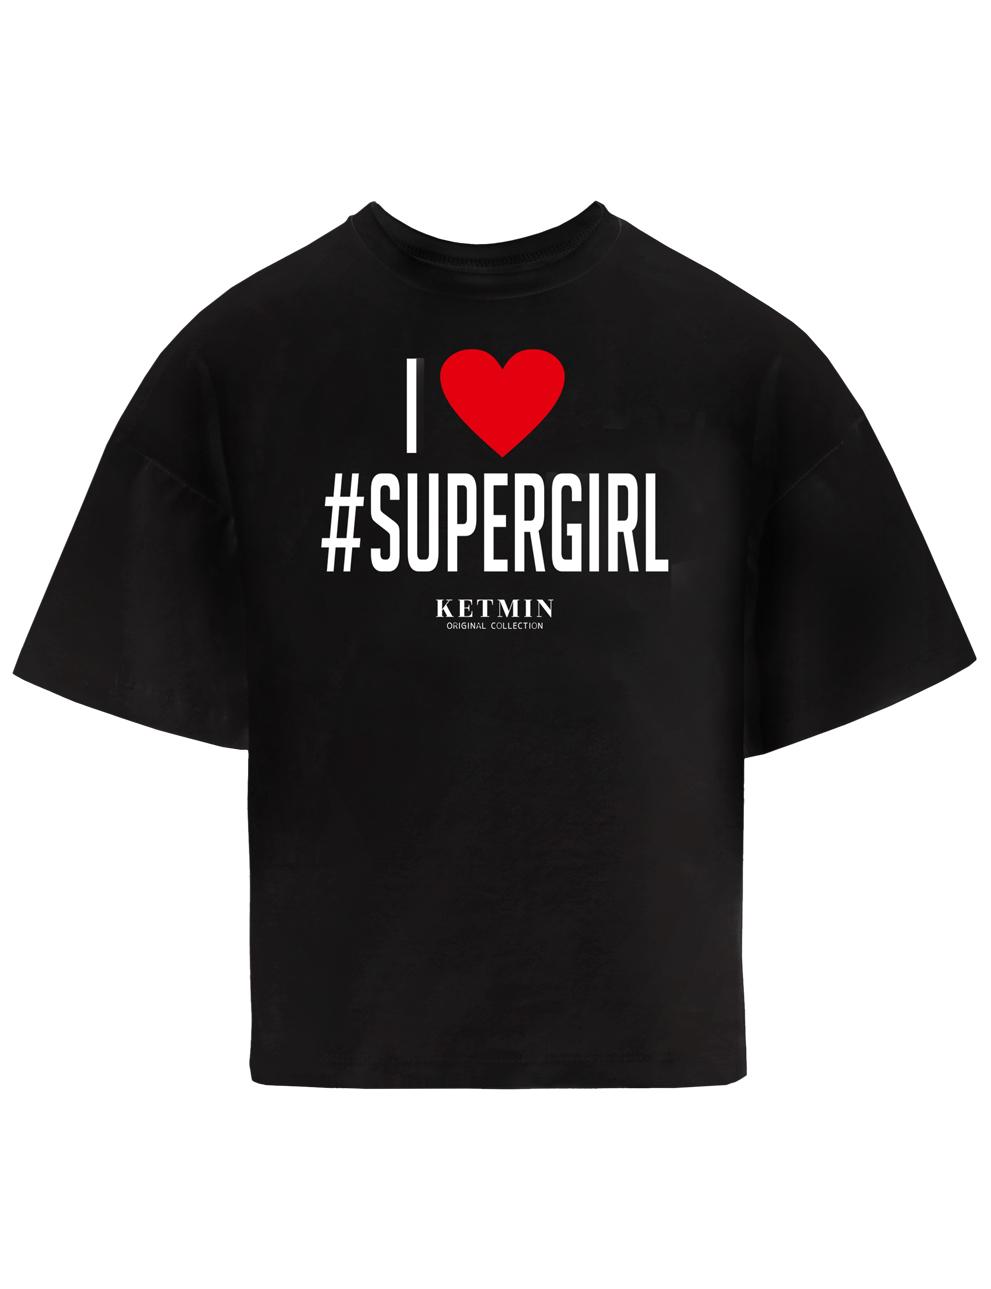 Футболка для девочки KETMIN #SUPERGIRL цв.Черный